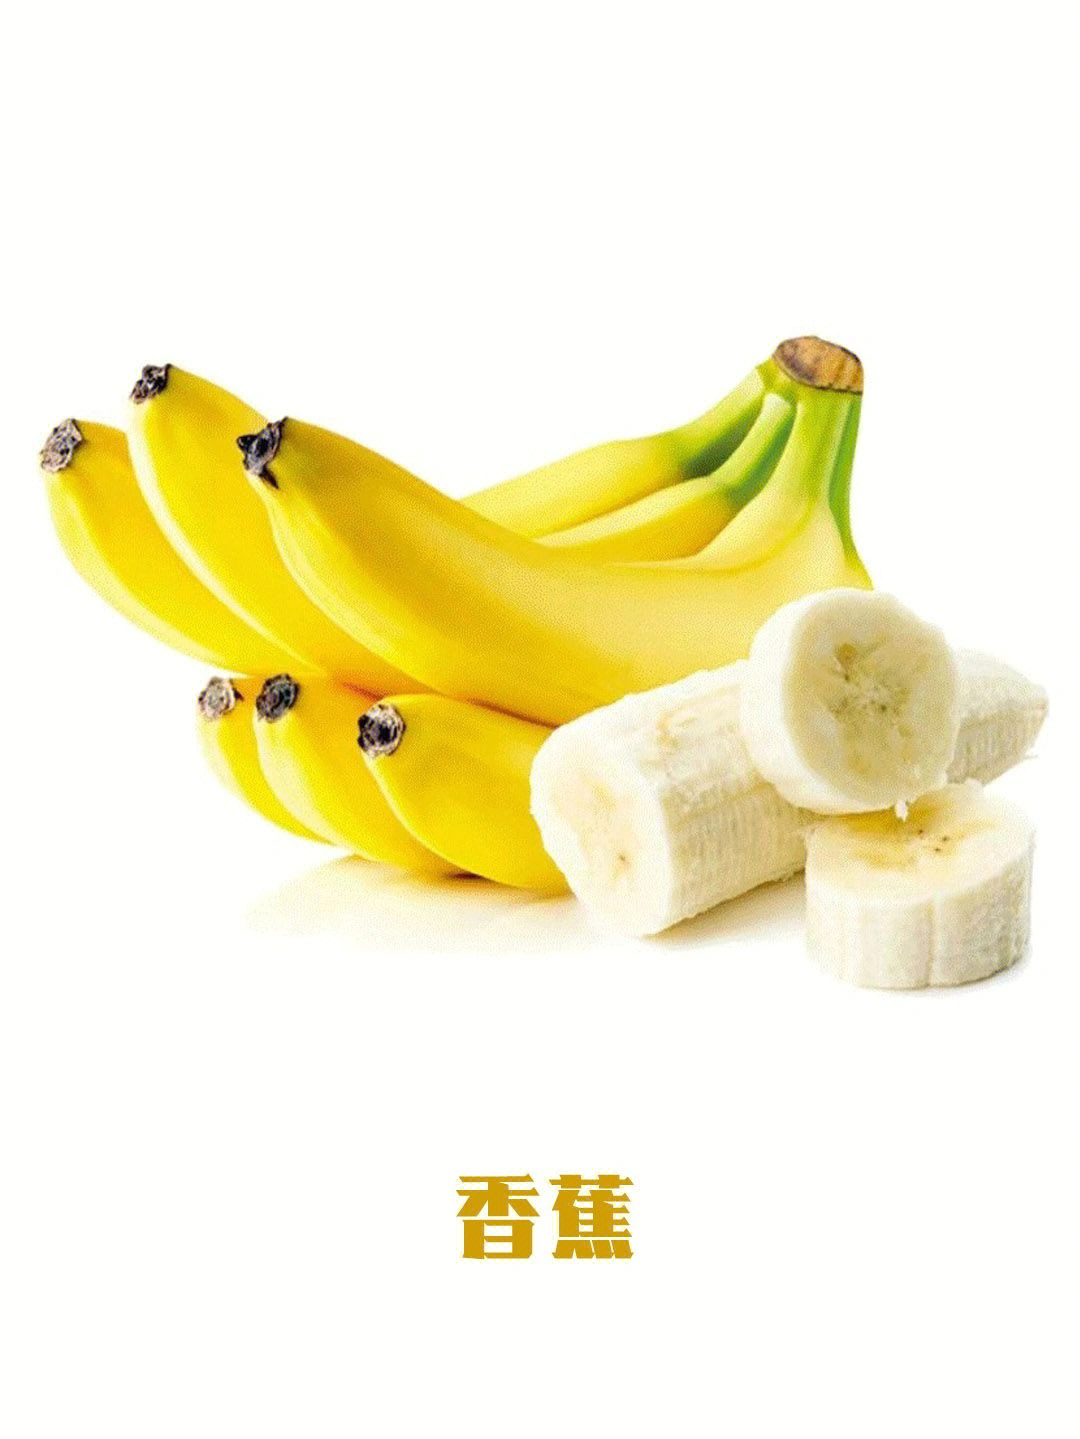 香蕉内部结构图和讲解图片